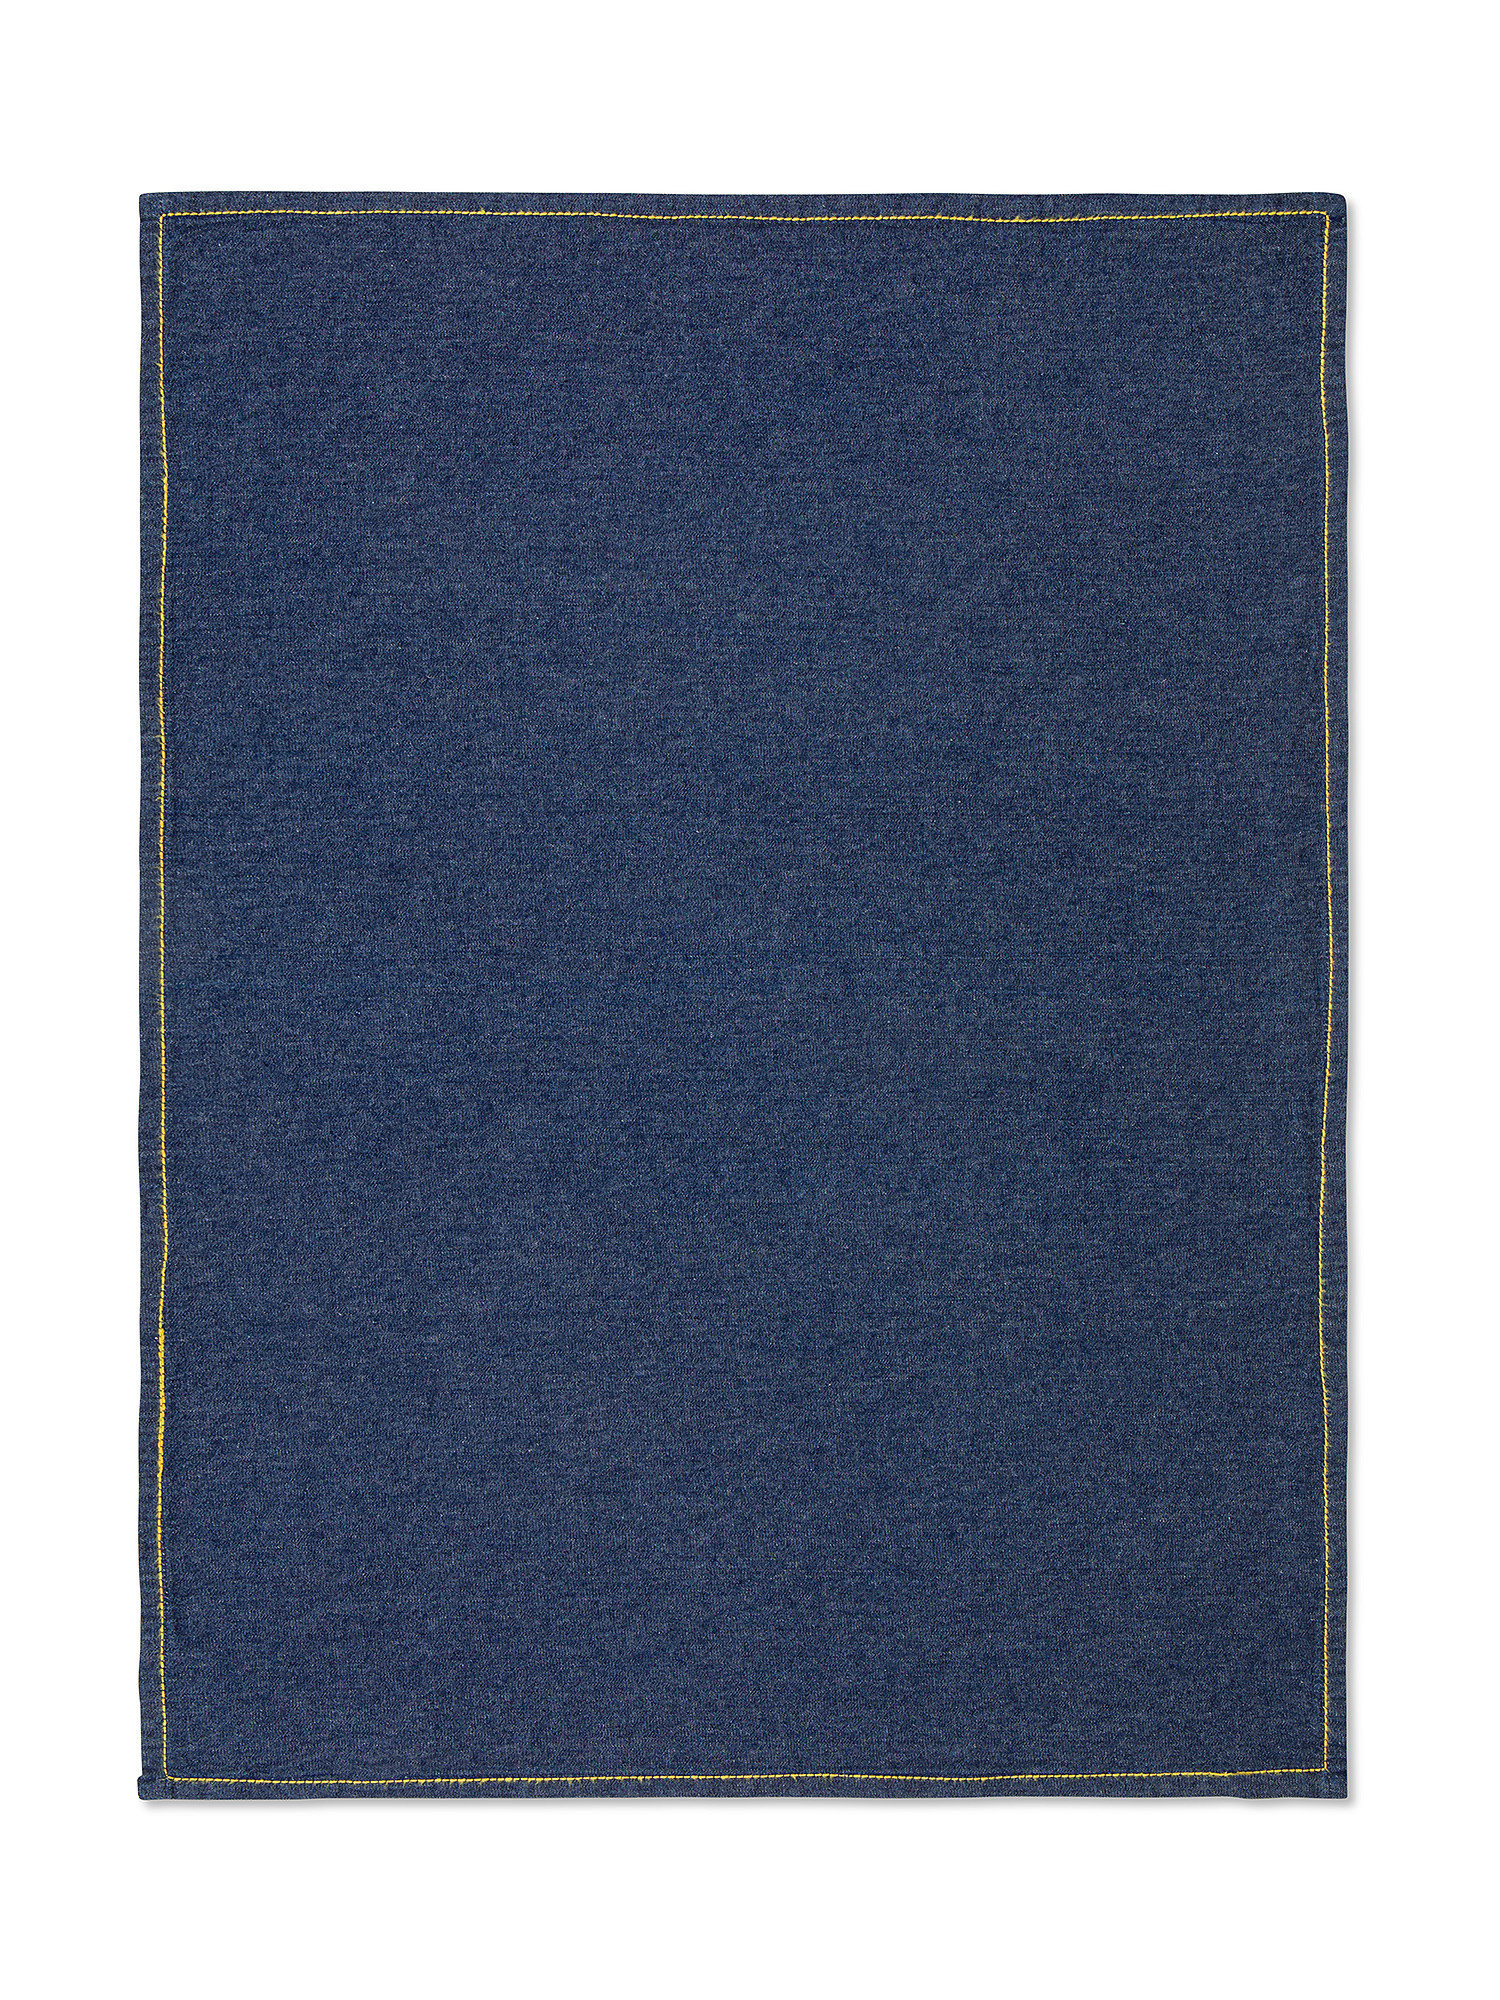 Set of 2 cotton denim tea towels, Blue, large image number 1